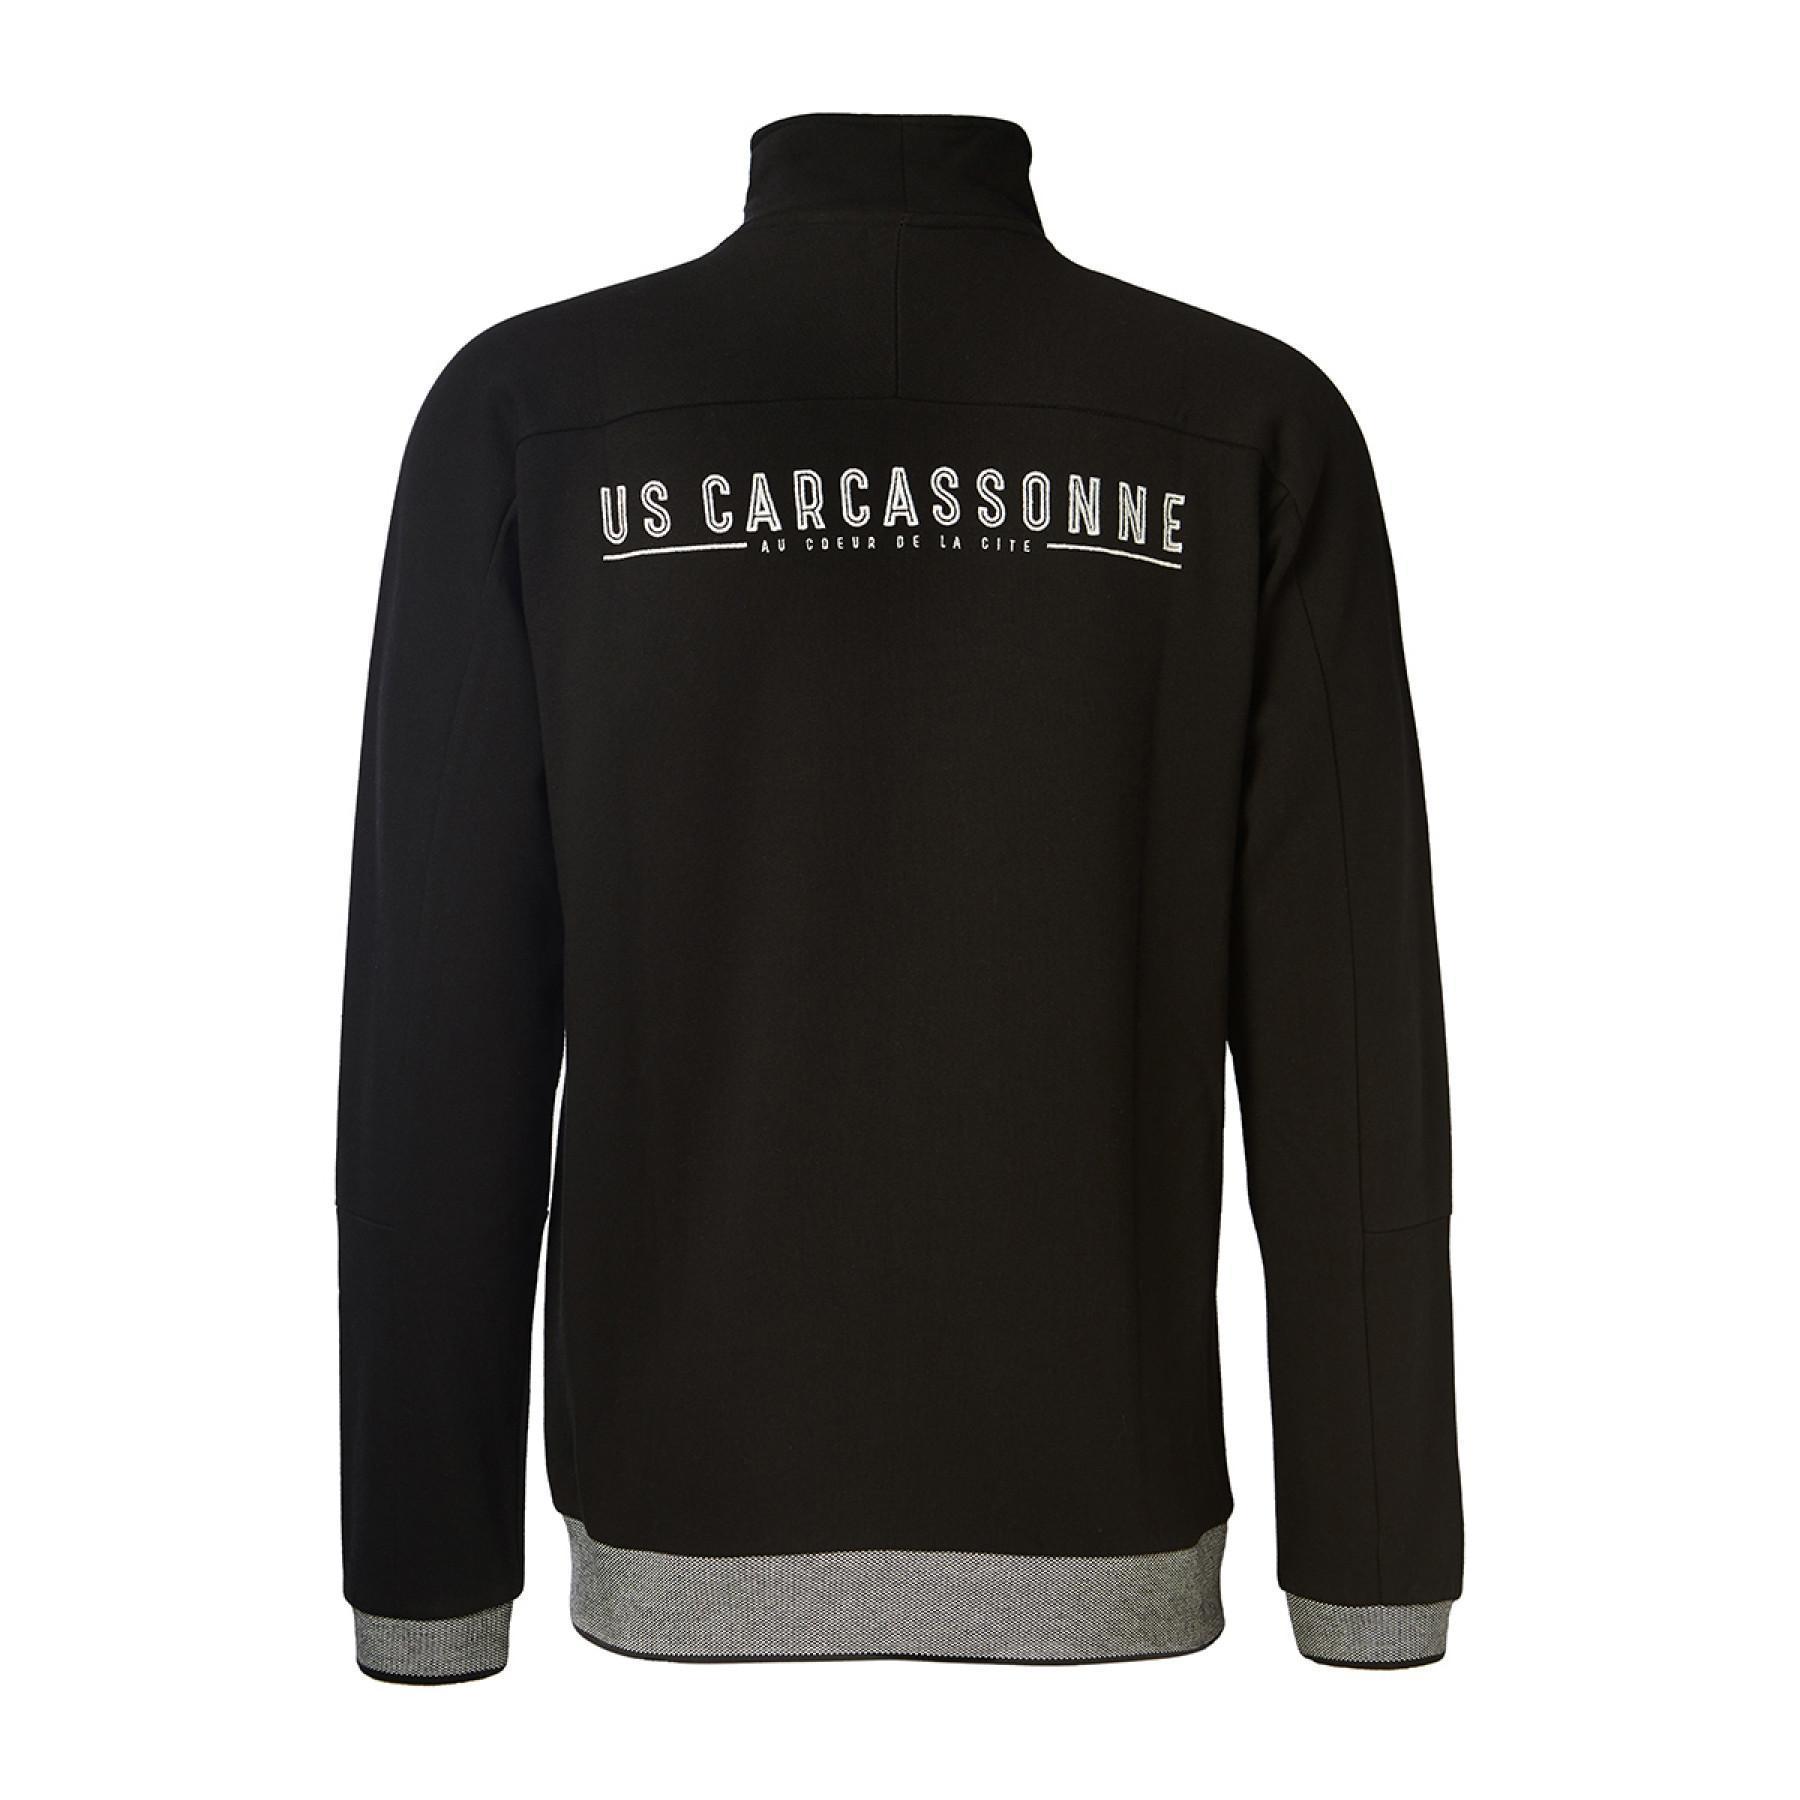 Jacket US Carcassonne 2020/21 guardi